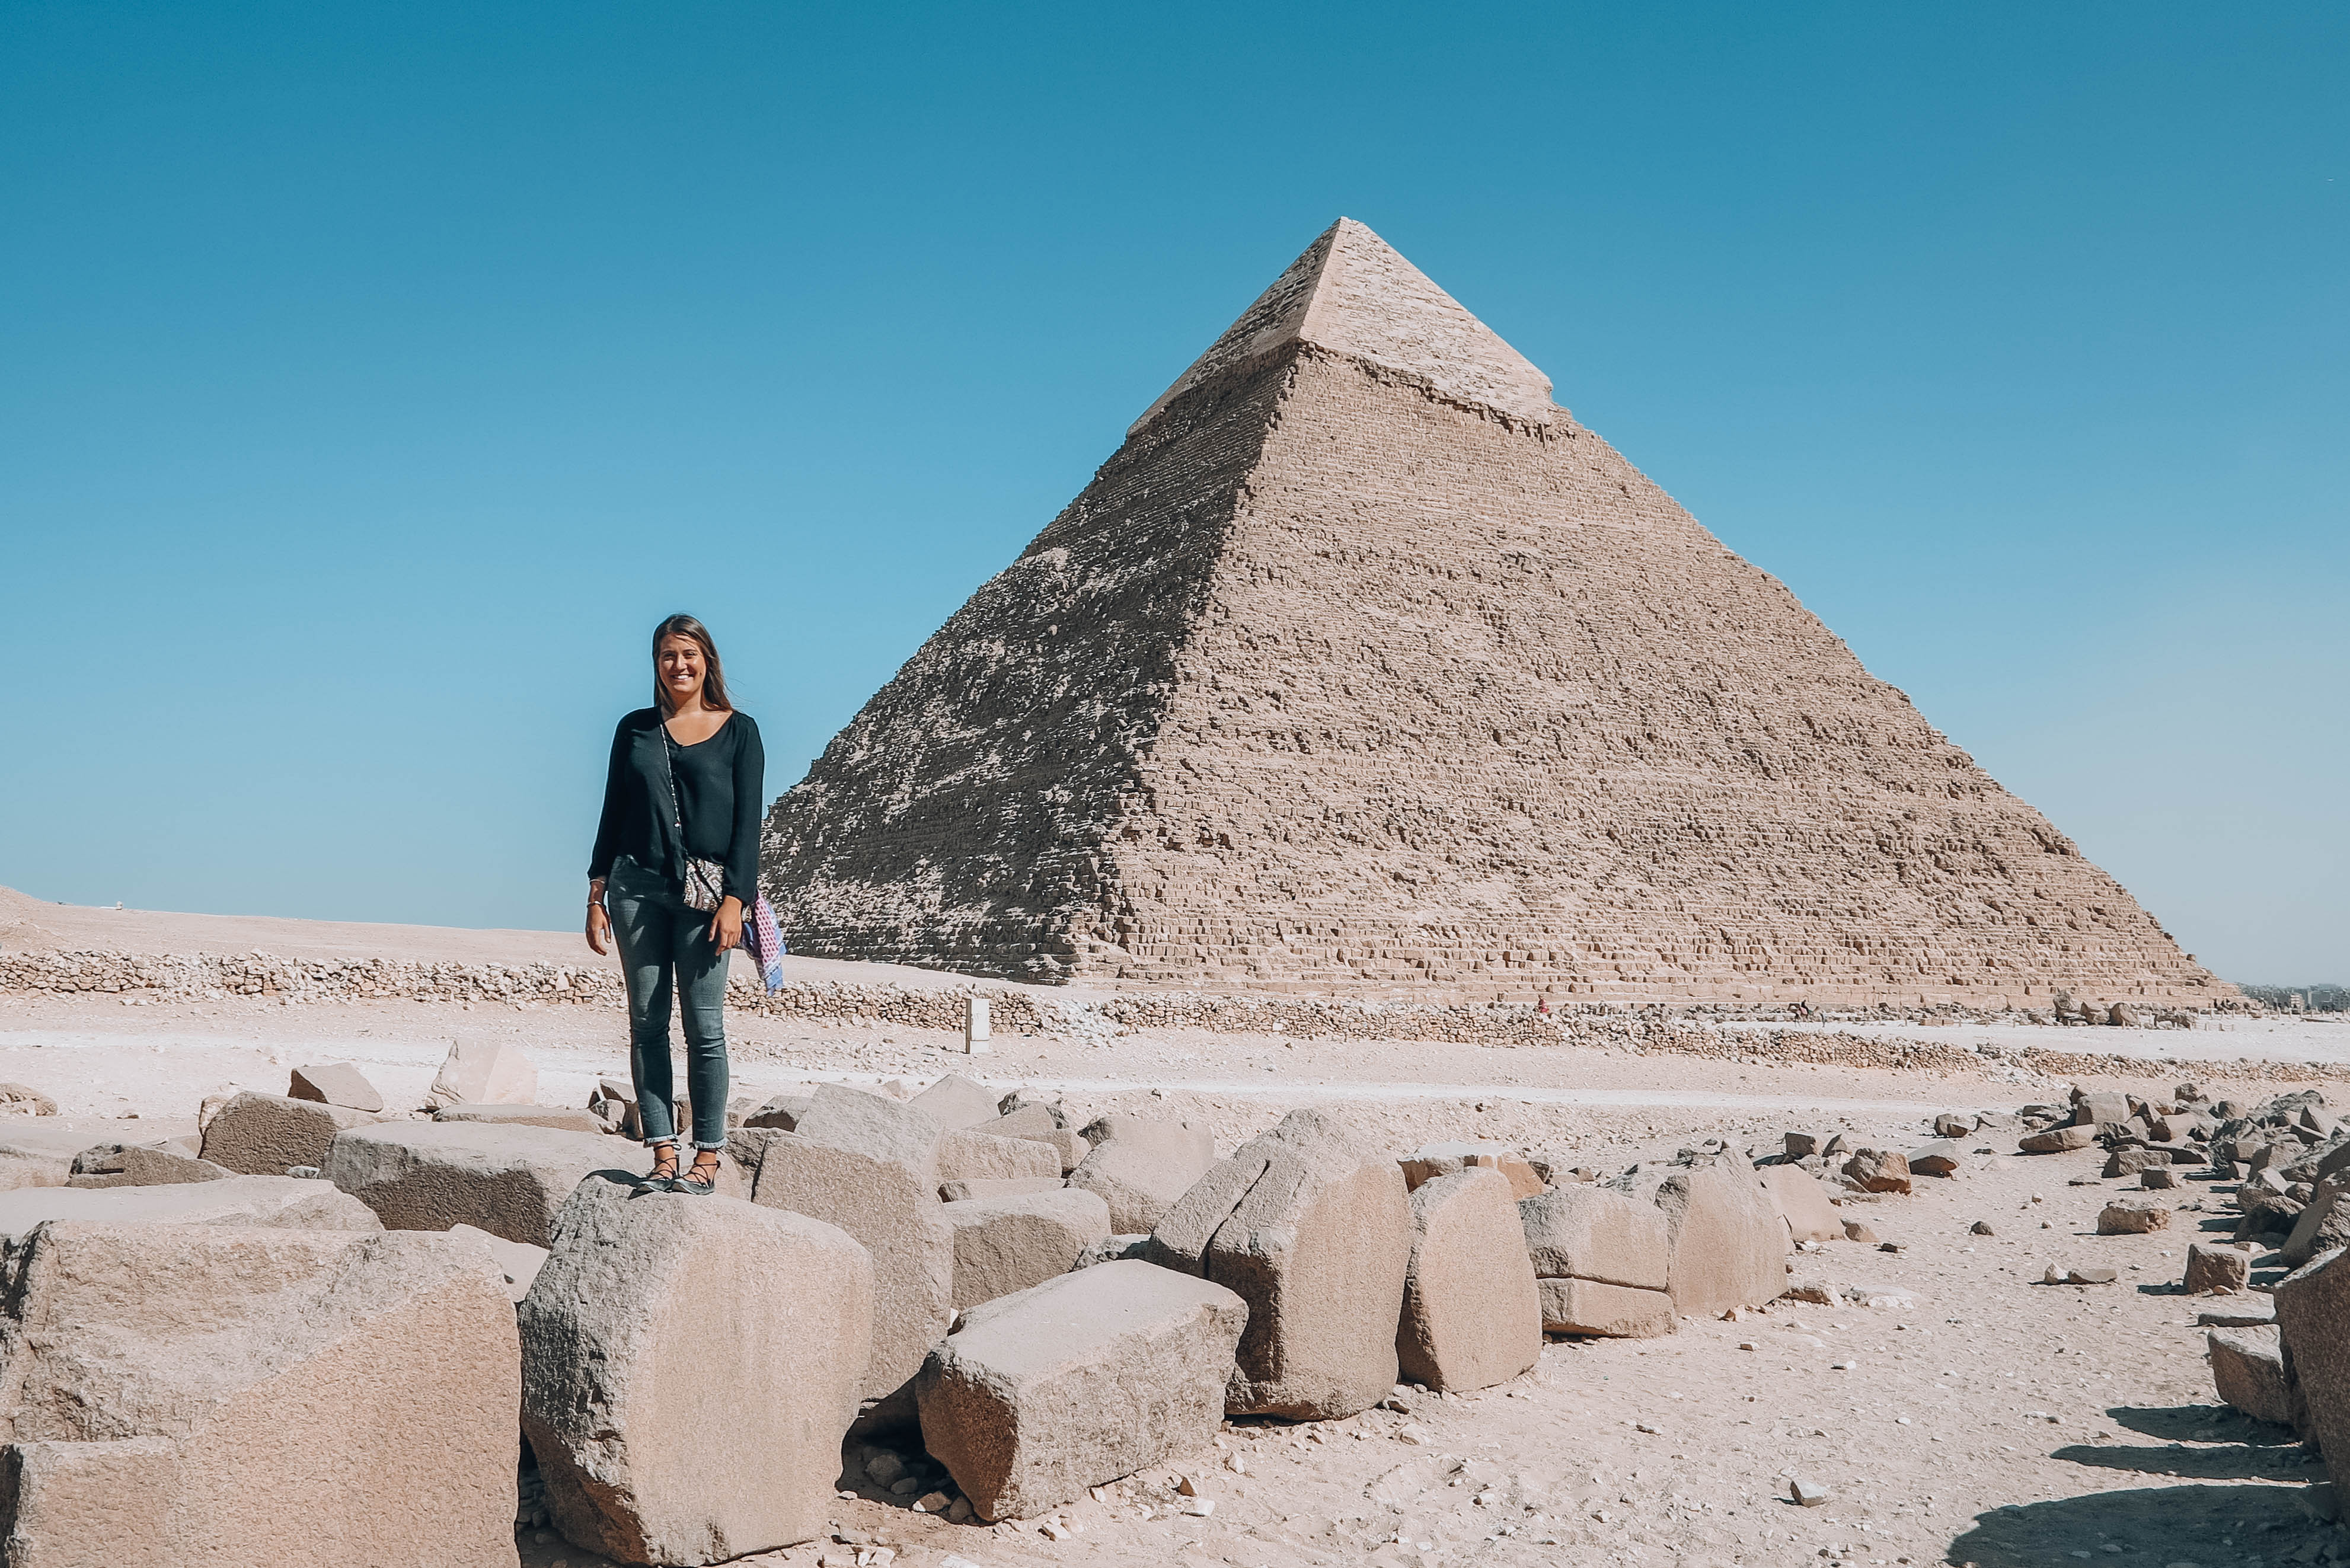 Пирамида хеопса и человек